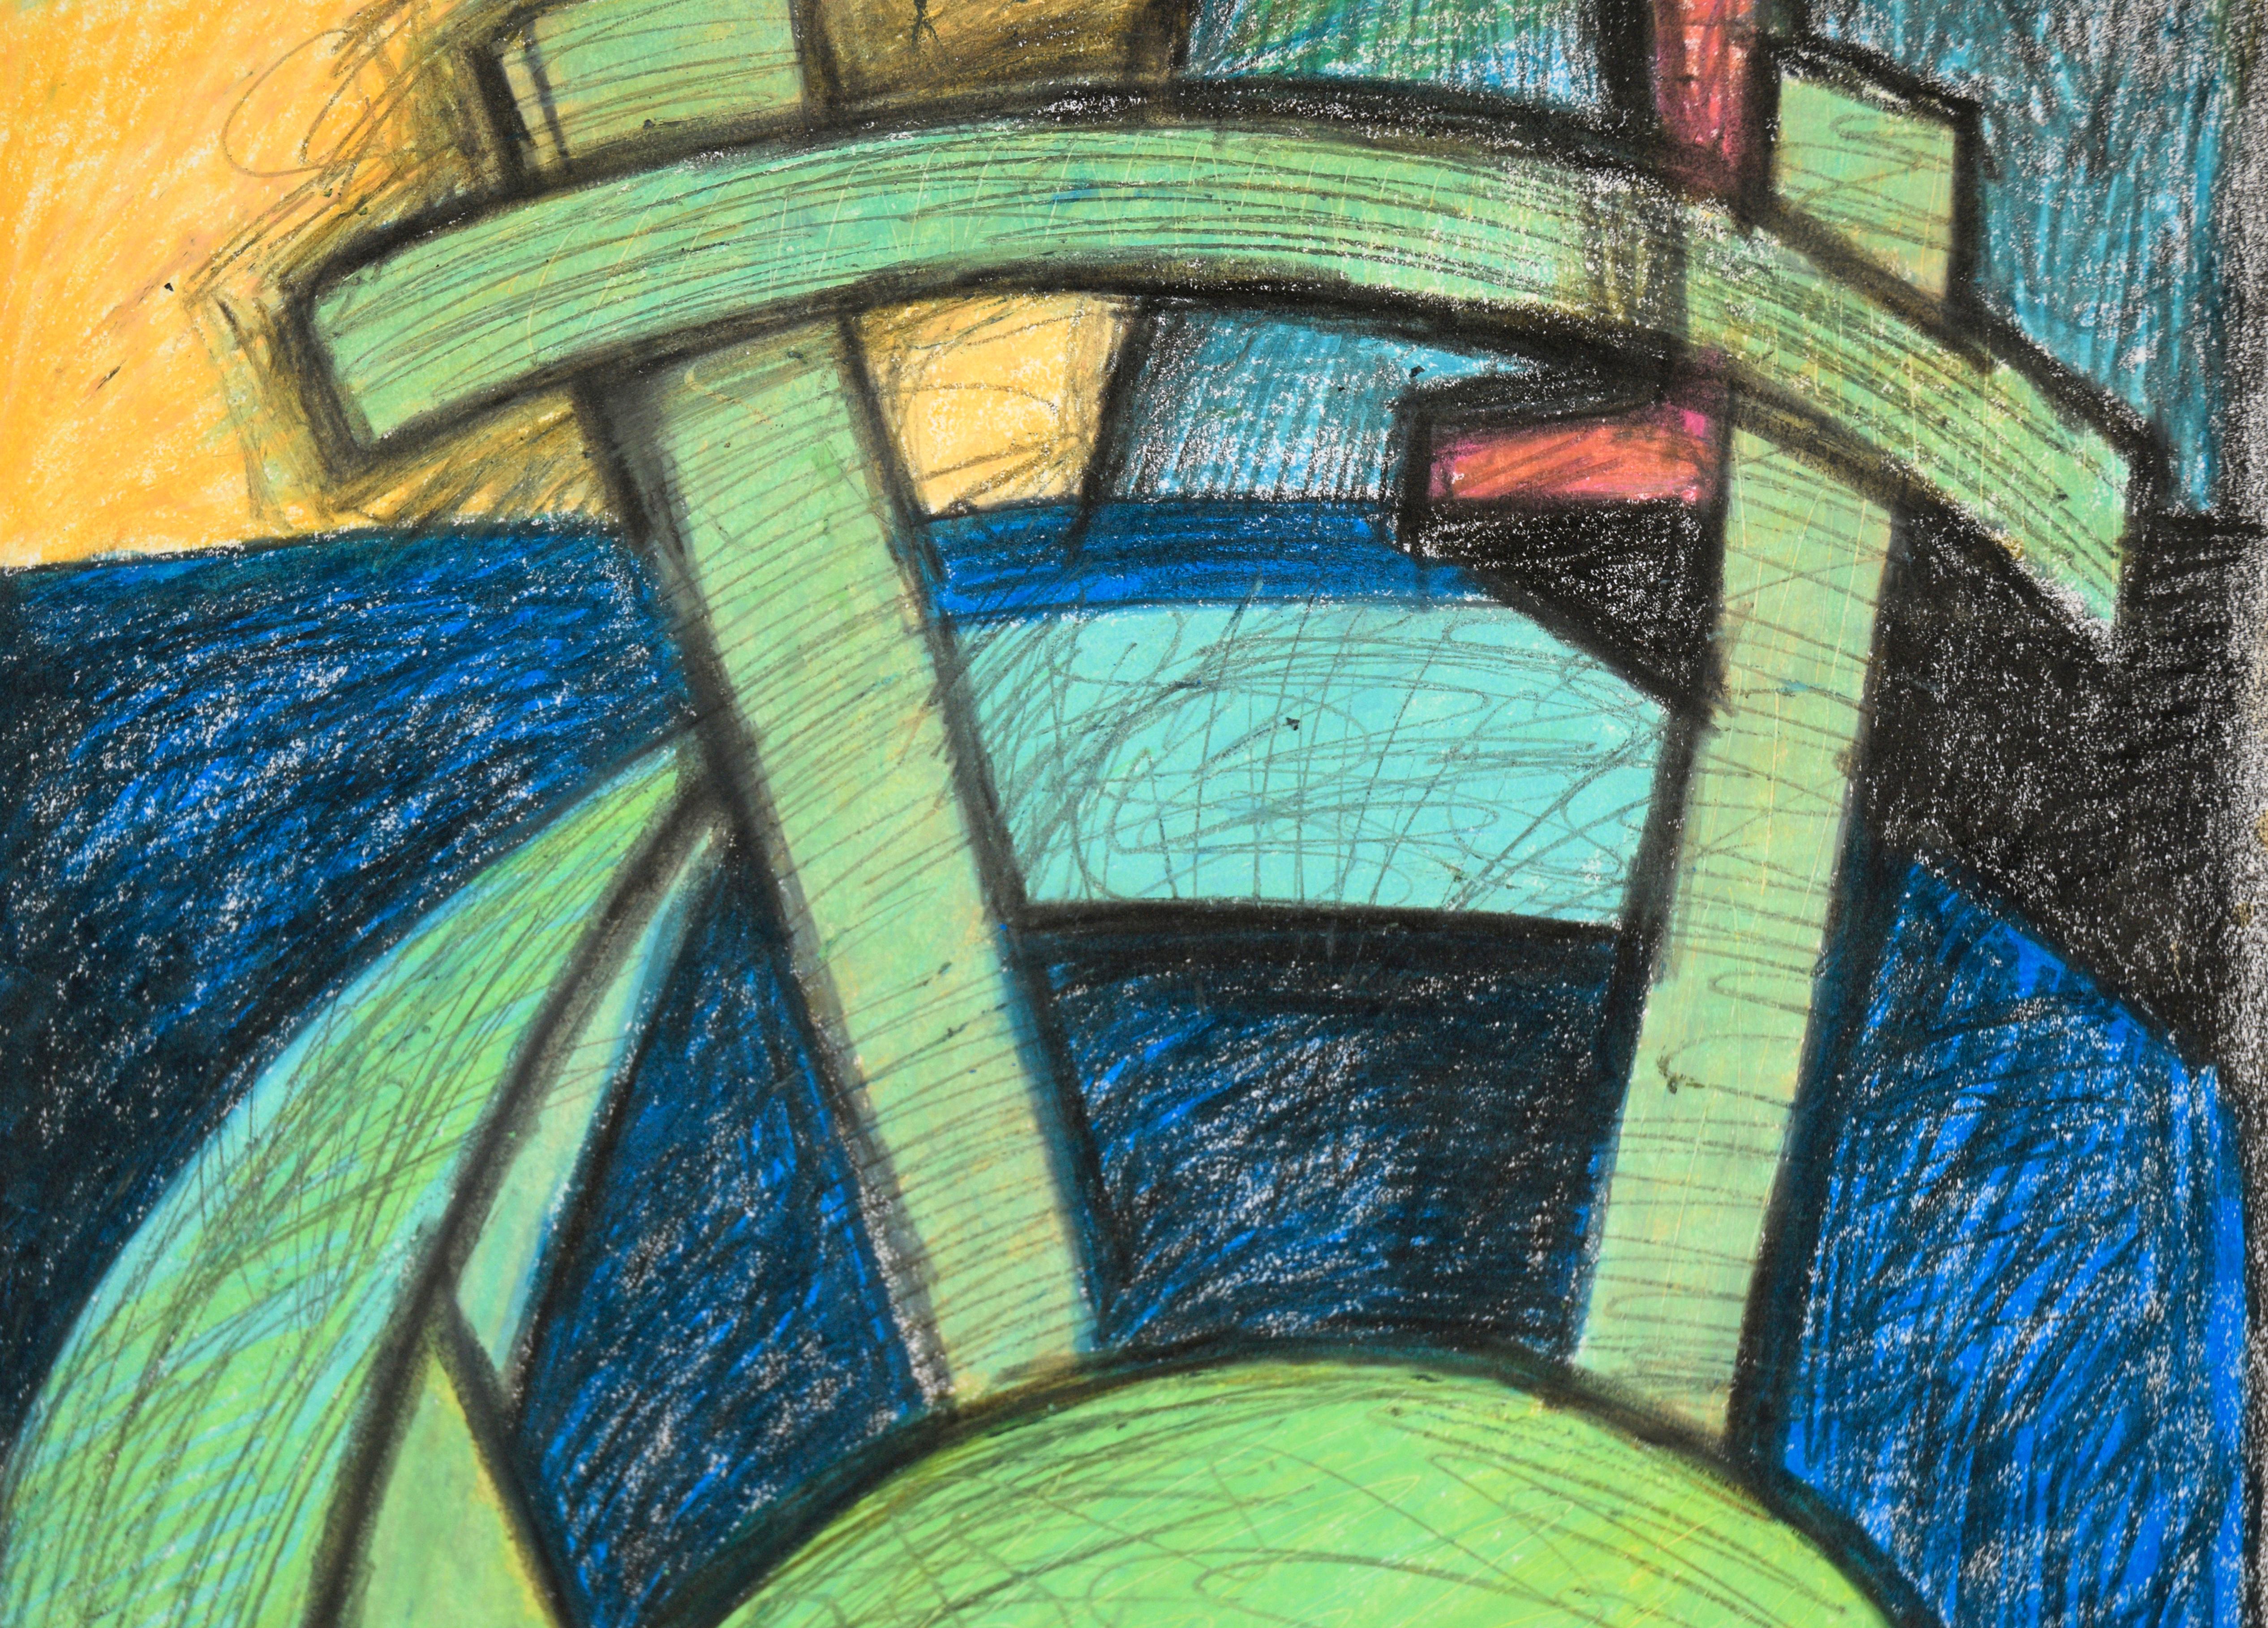 Bunte Innenraumszene mit einem grünen Stuhl von Michael William Eggleston (Amerikaner, 20. Jahrhundert). Das Innere eines Raumes ist in einem schrägen Winkel dargestellt, mit kräftigen, hellen Formen. Im Vordergrund der Komposition steht ein